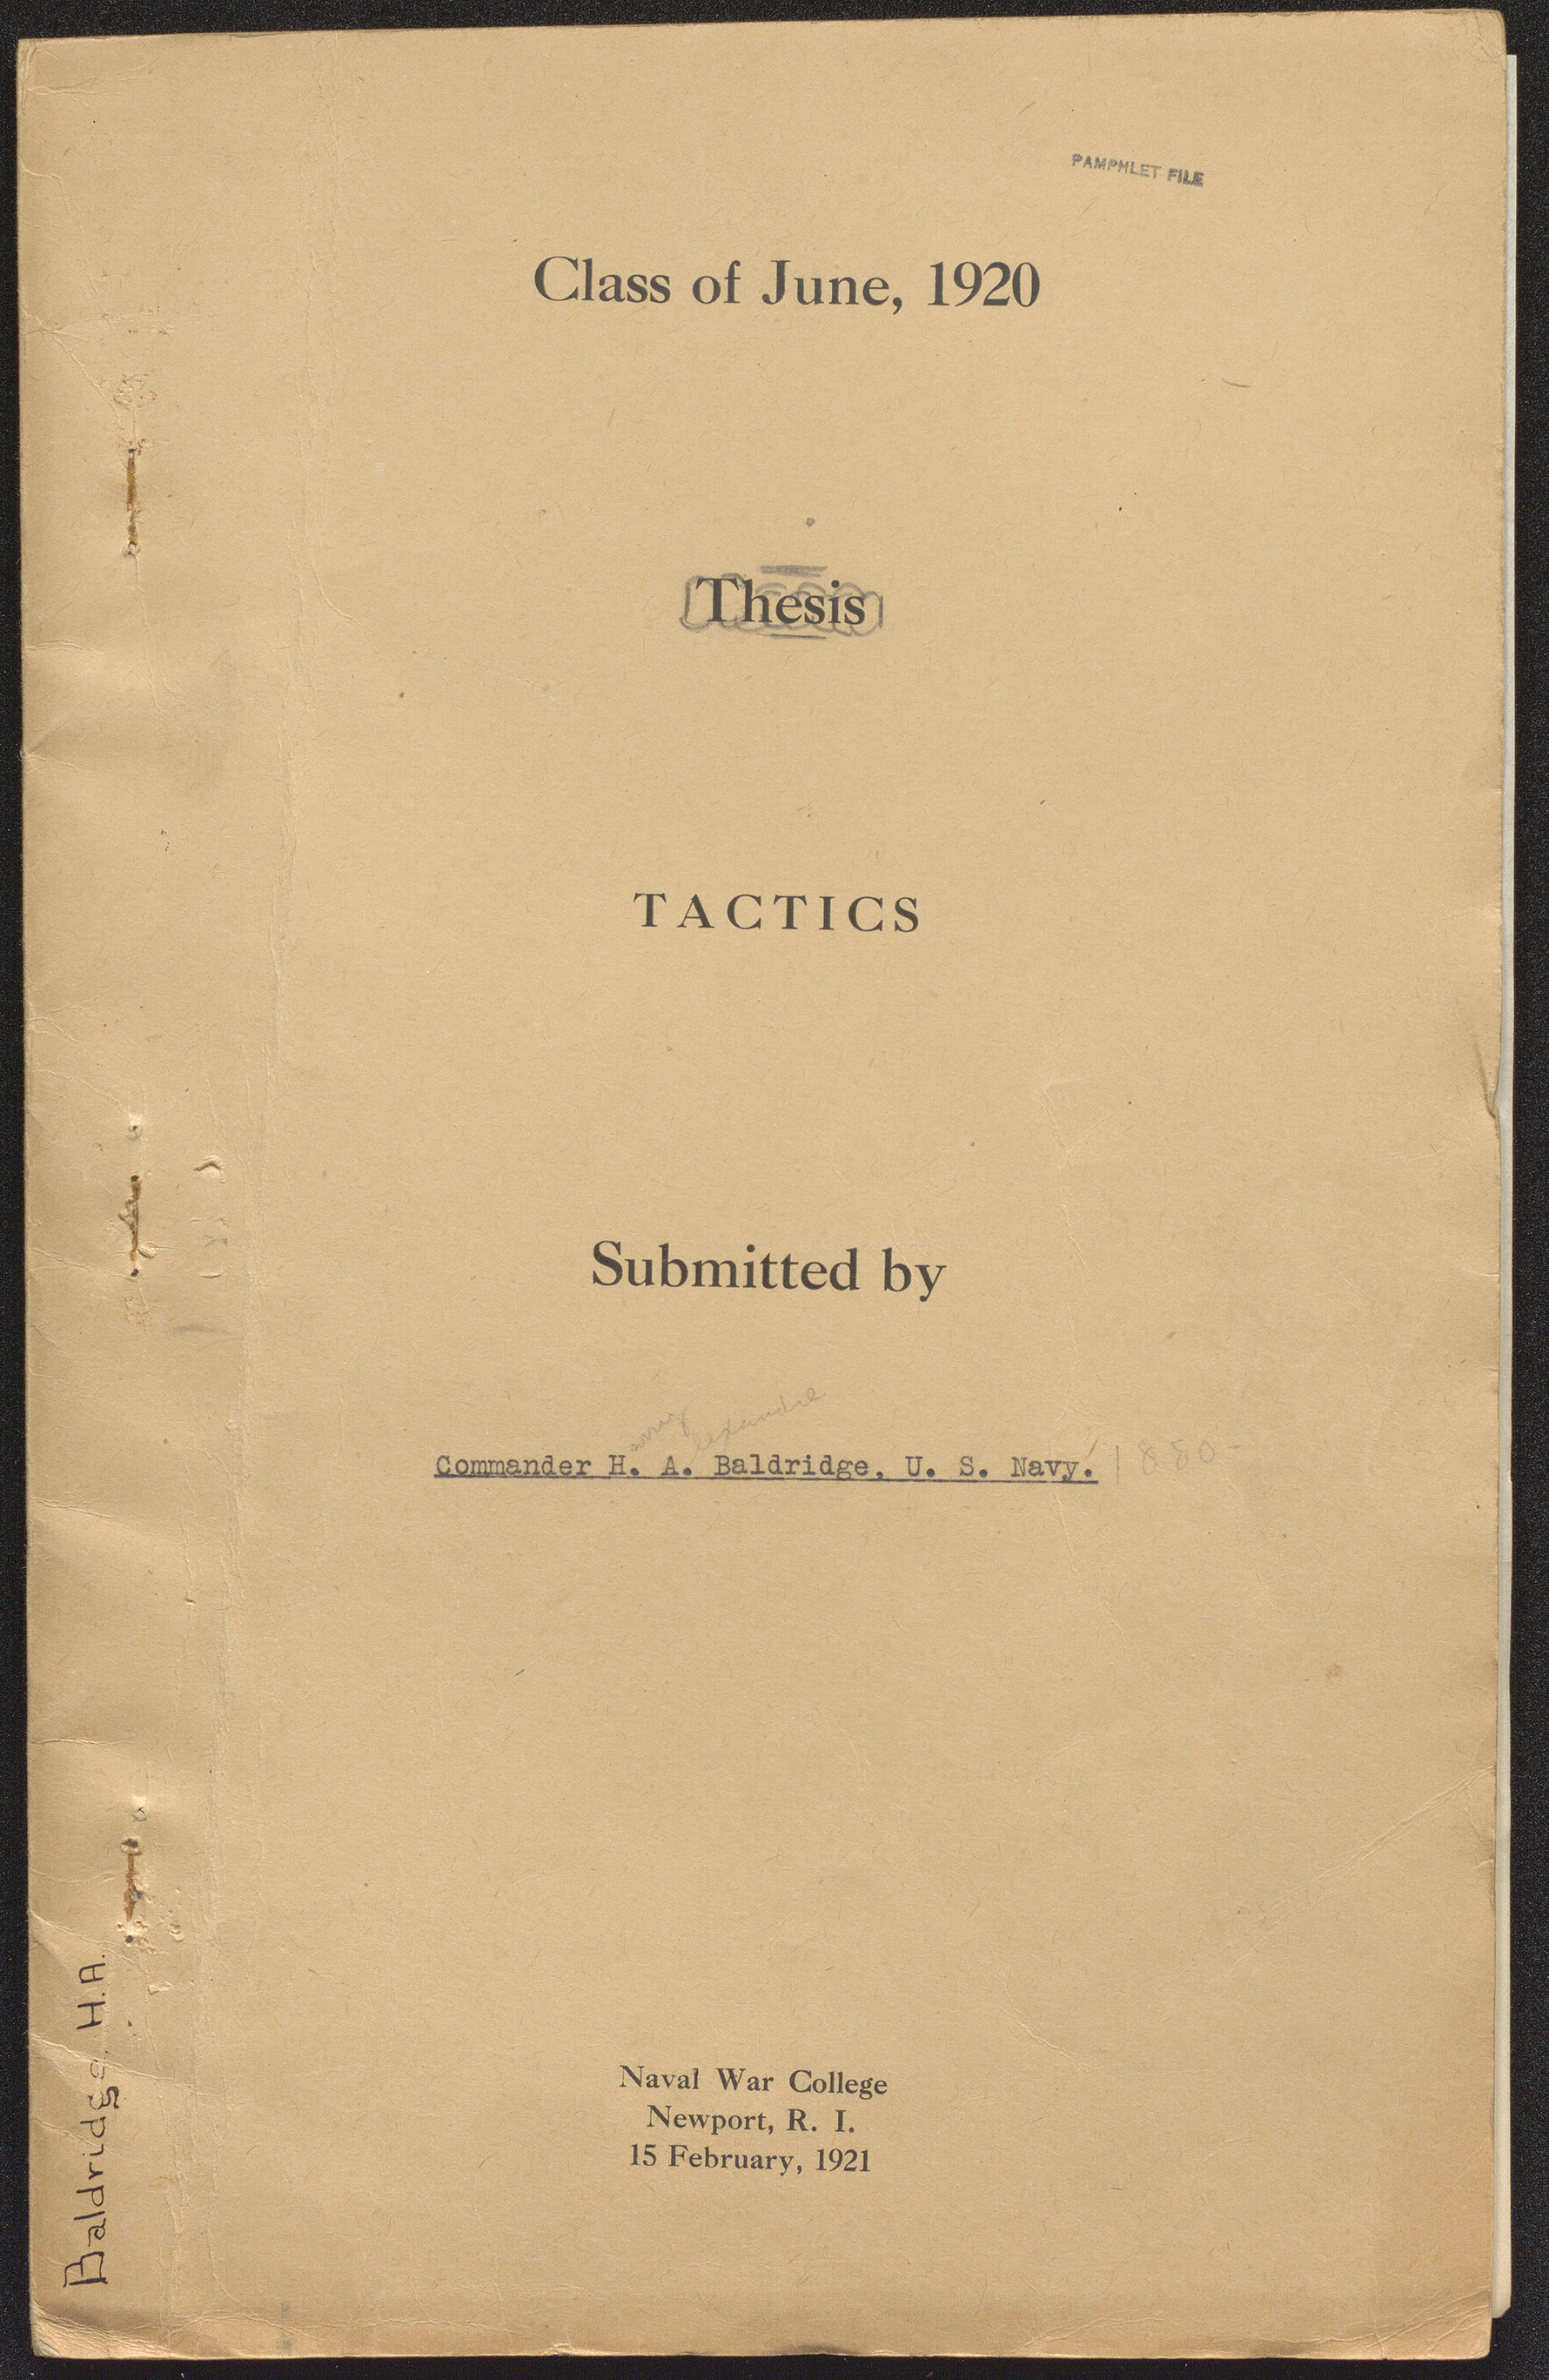 Tactics, Harry A. Baldridge